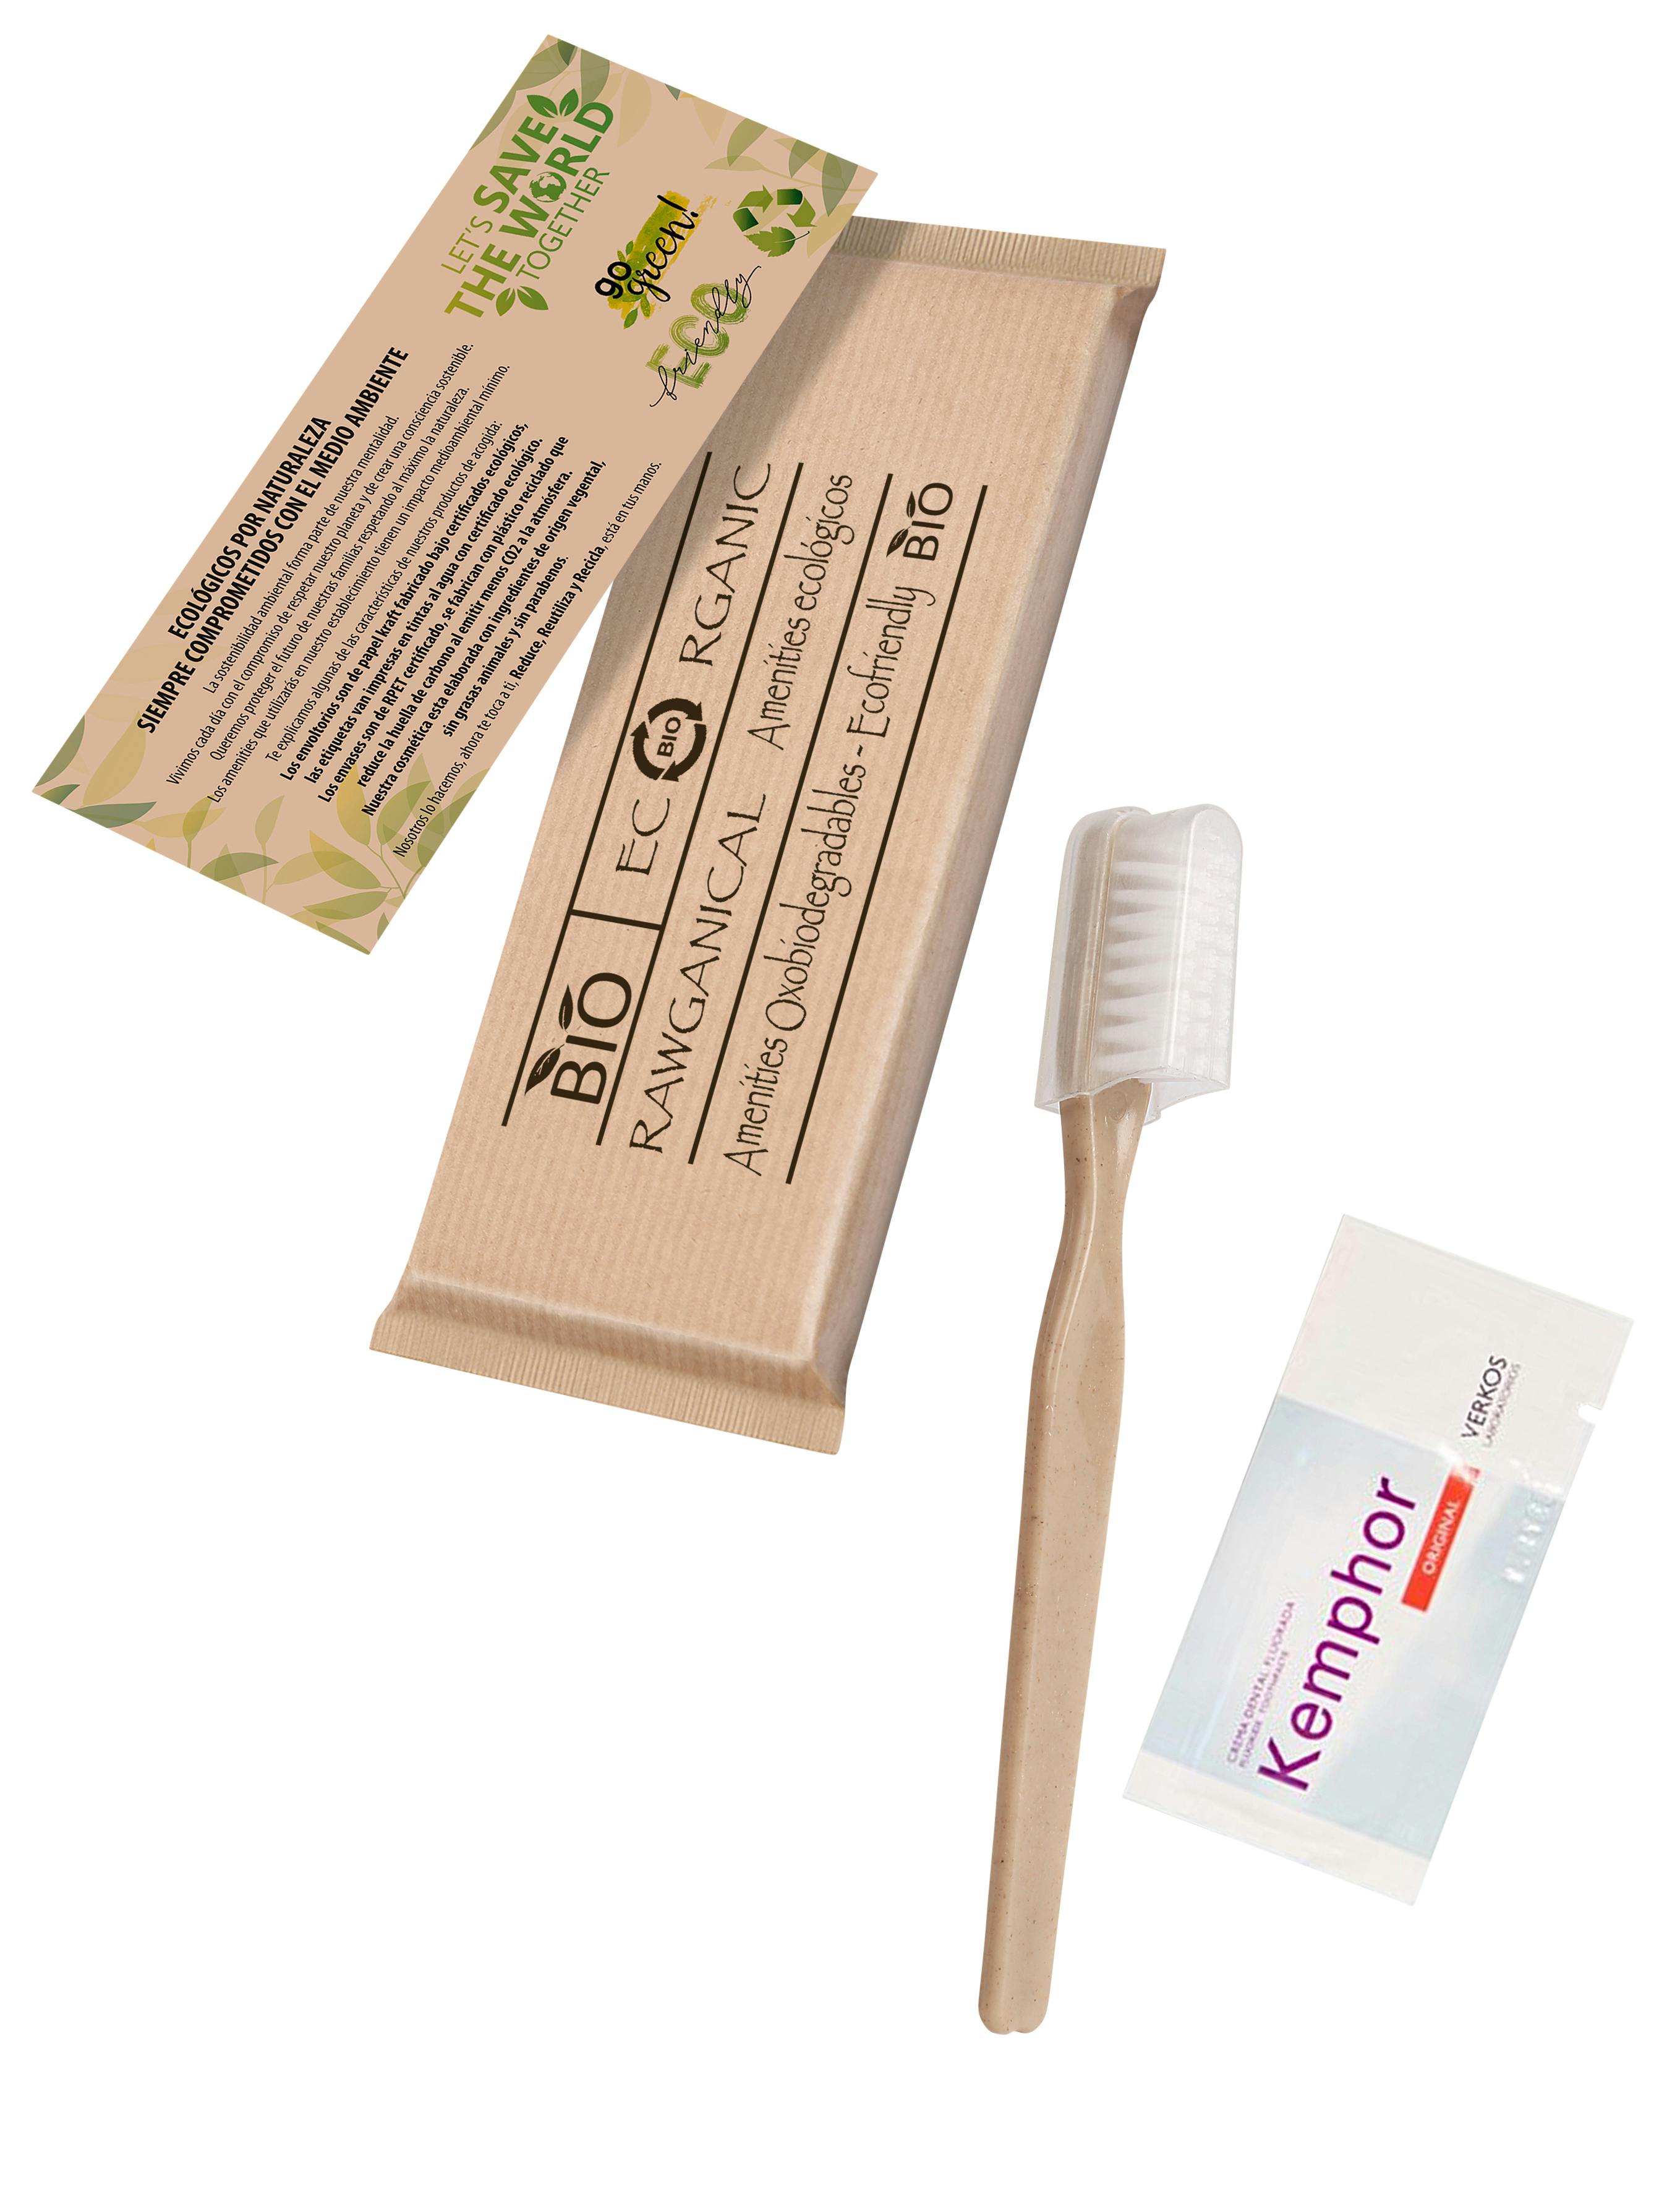 400 Sets dentales cepillo de y pasta de dientes - Kit dental ecológico envuelto individualmente en papel reciclado - hoteles huéspedes | MAKRO Marketplace